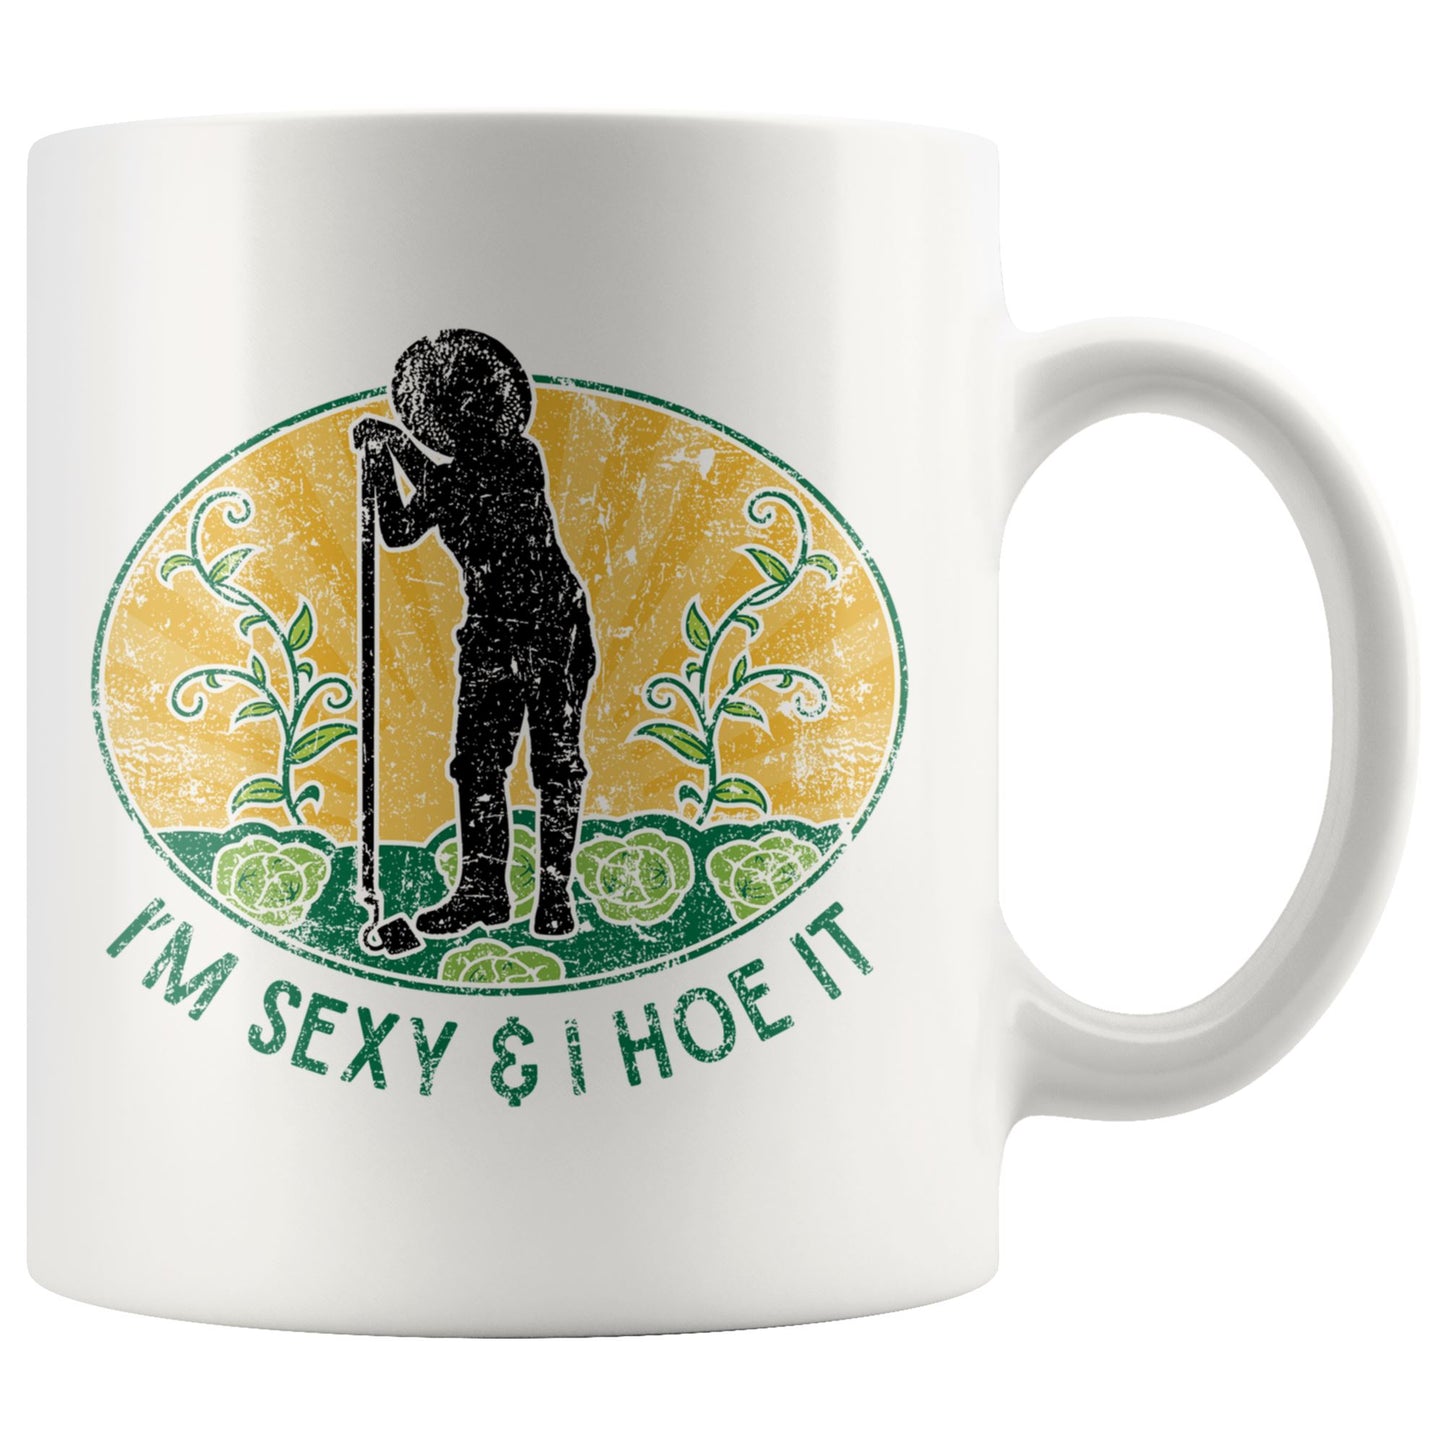 I'm Sexy and I Hoe It • Gardeners Mug Drinkware teelaunch 11oz Mug 